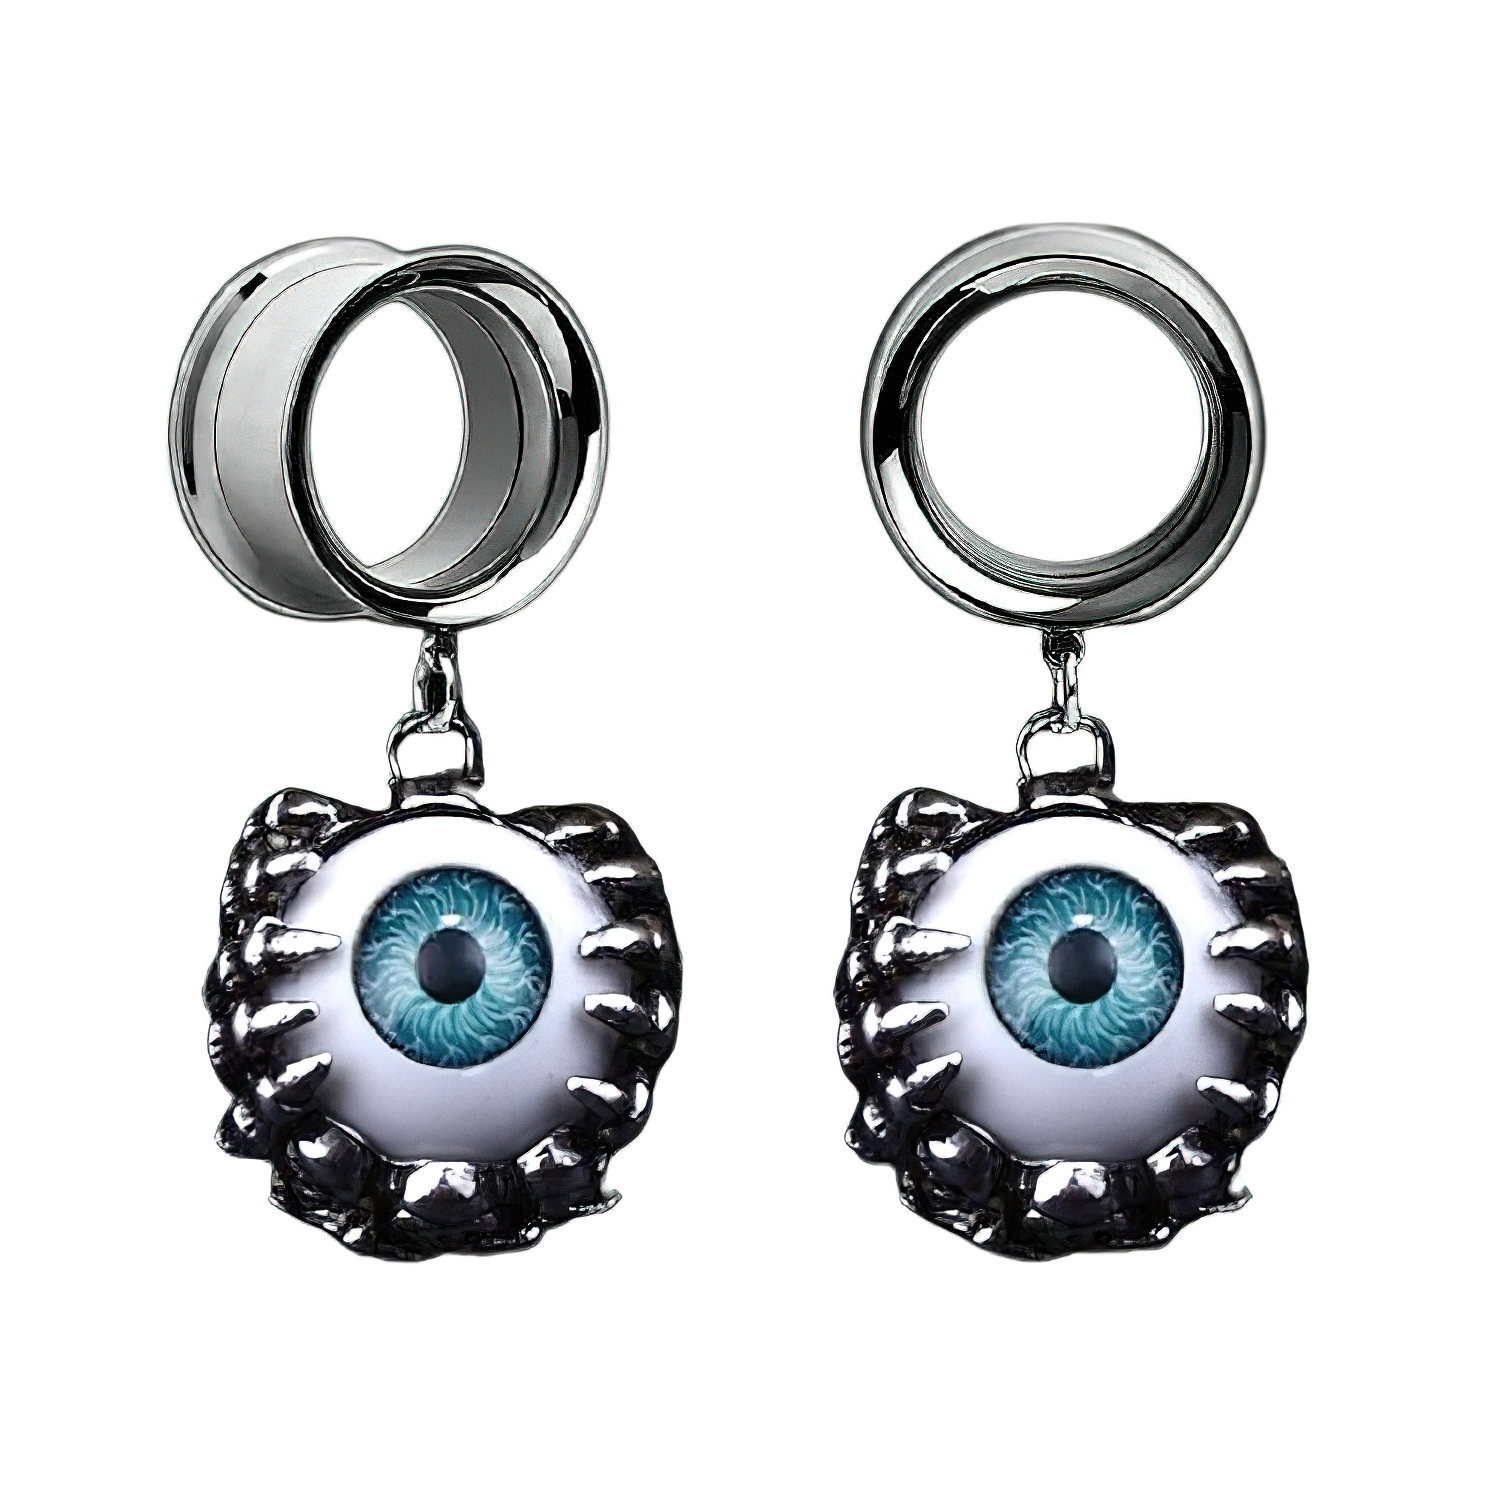 Cool 2PC Unisex Ear Reamer / Grunge Blue Eyes Tunnels / Stainless Steel Jewelry - HARD'N'HEAVY